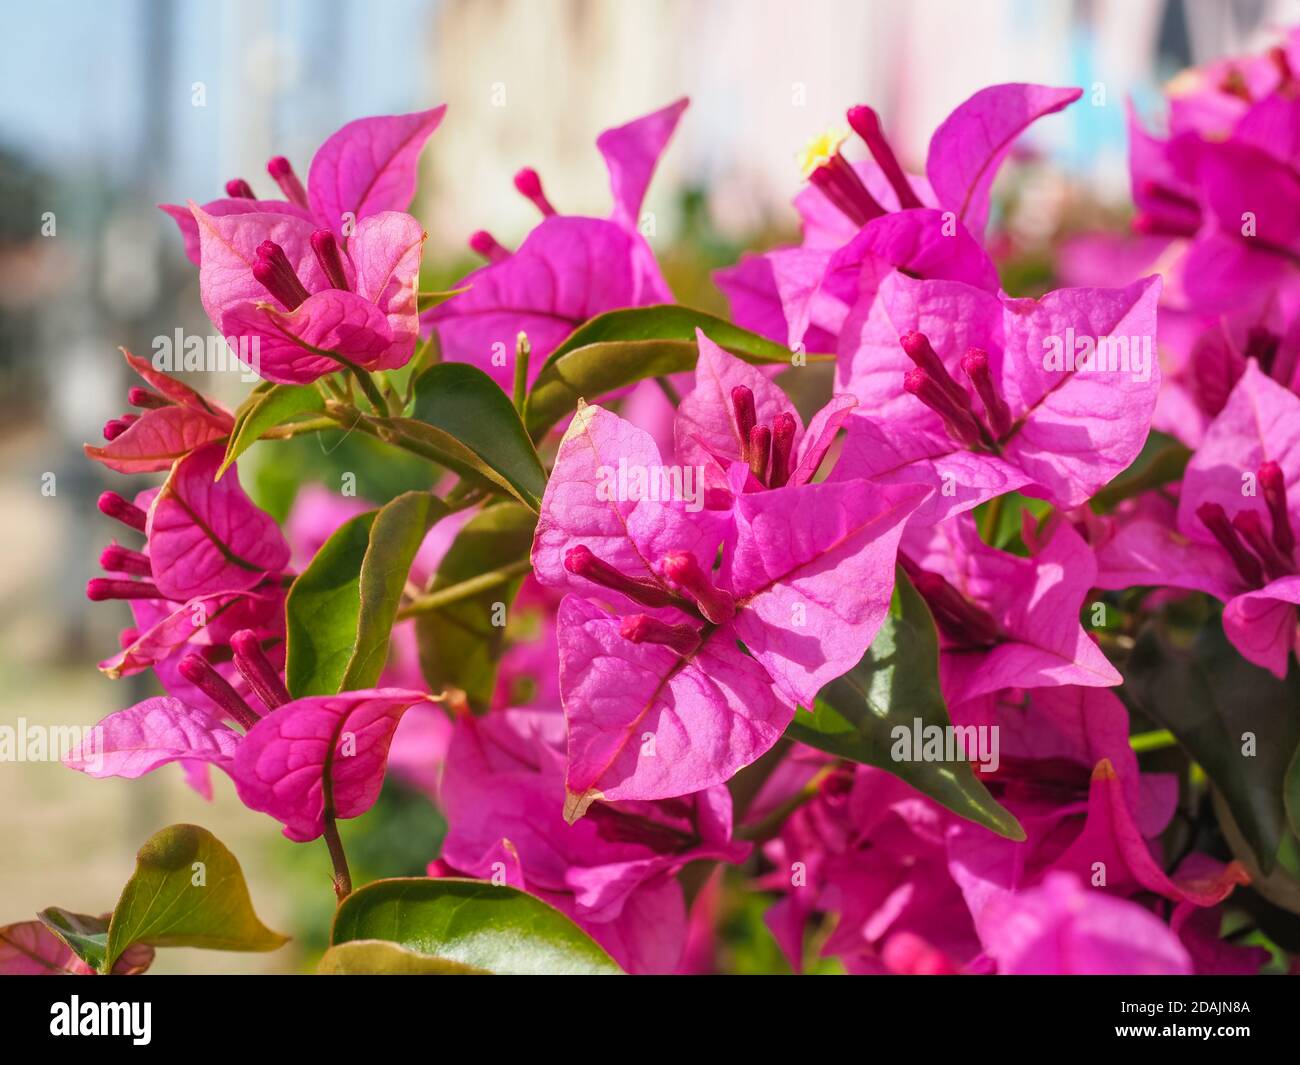 Bougainvillea spectabilis bekannt als große Bougainvillea. Blühende Pflanze in der Familie Nyctaginaceae. Paperflower ist holziger Weinstrauch mit rosa Blüten Stockfoto